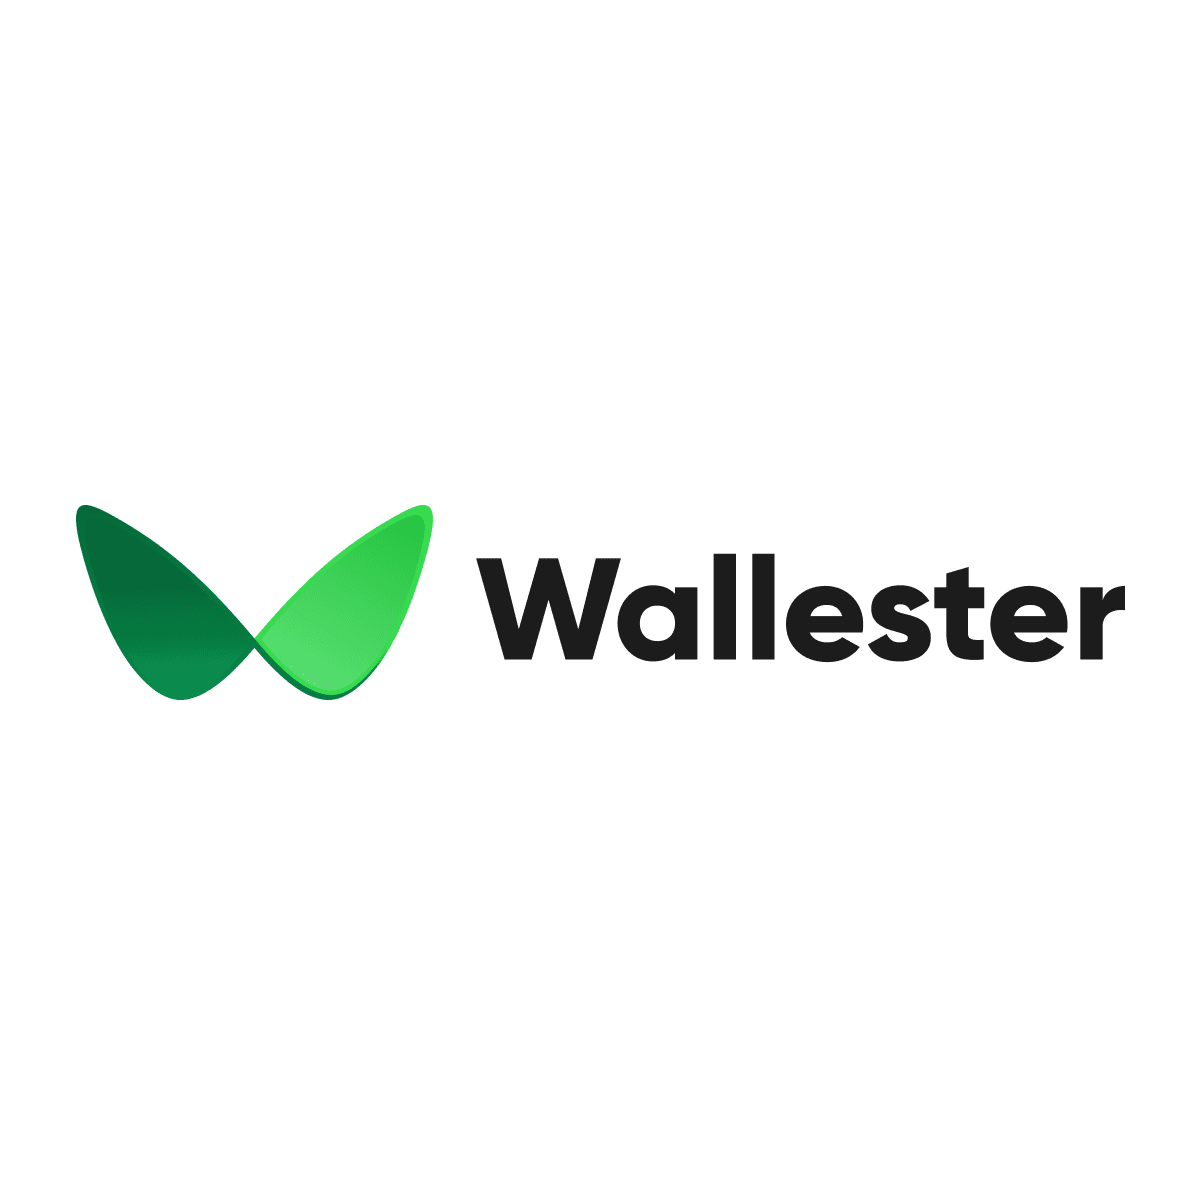 (c) Wallester.com